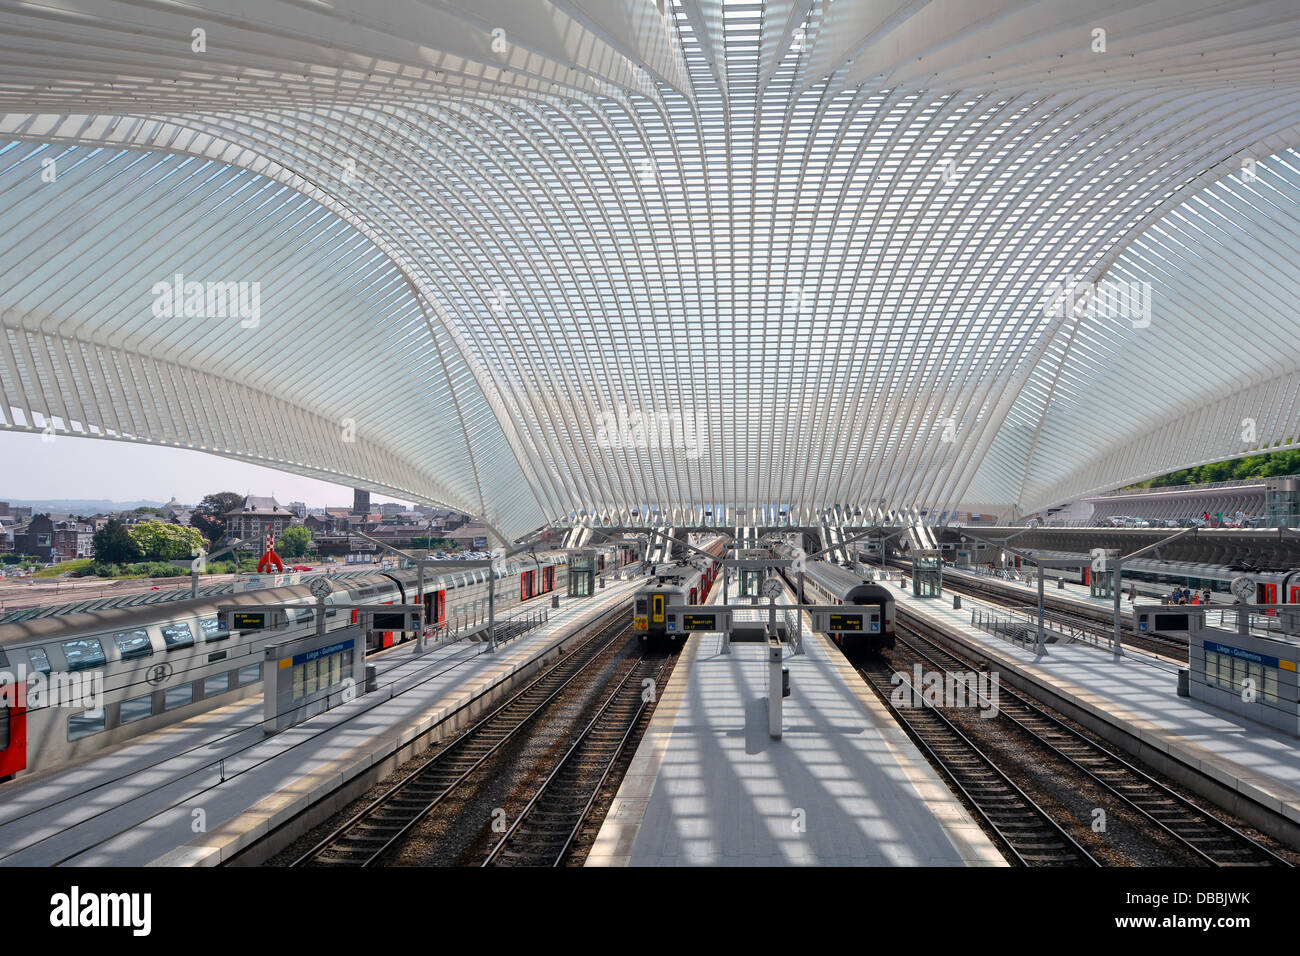 Gleise Züge Plattformen alle durch die gläserne Decke und Dach in Belgien EU-Lüttich moderne Architektur mit öffentlichen Verkehrsmitteln Bahnhof Gebäude bedeckt Stockfoto